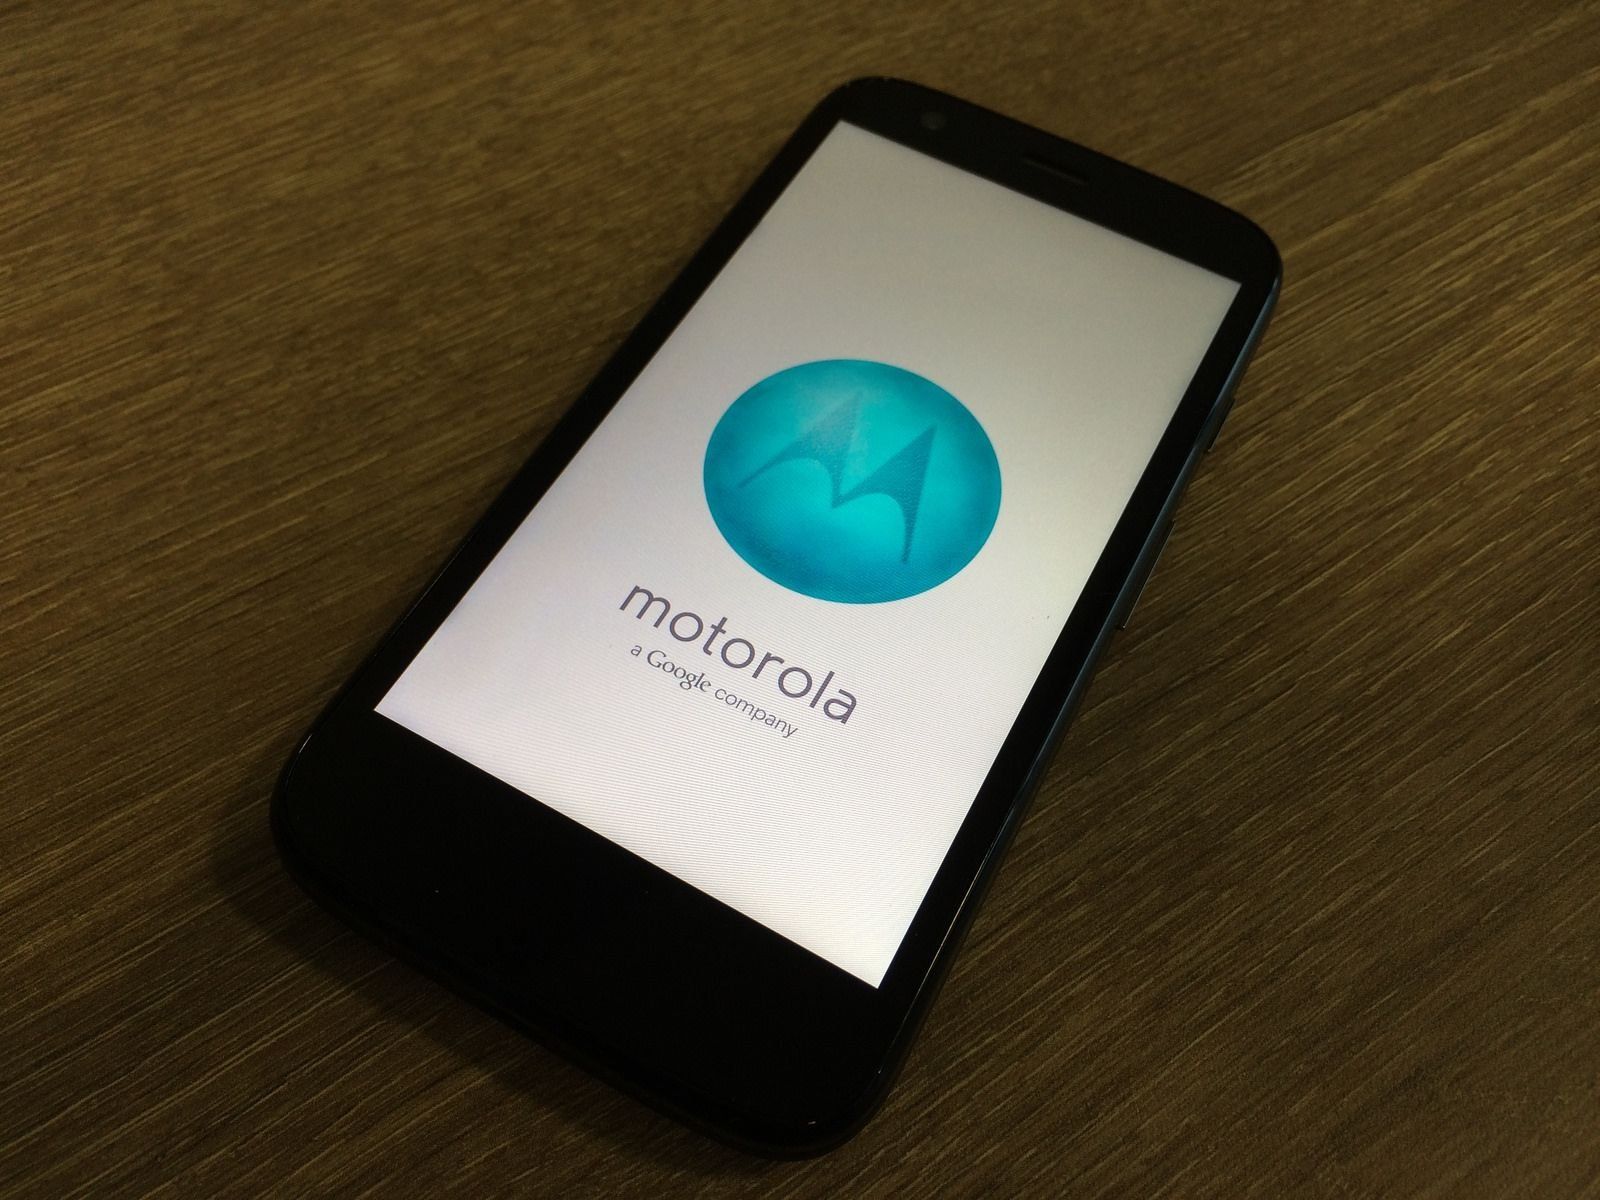 Motorola One and One Power (P30 One) smartphones - fördelar och nackdelar